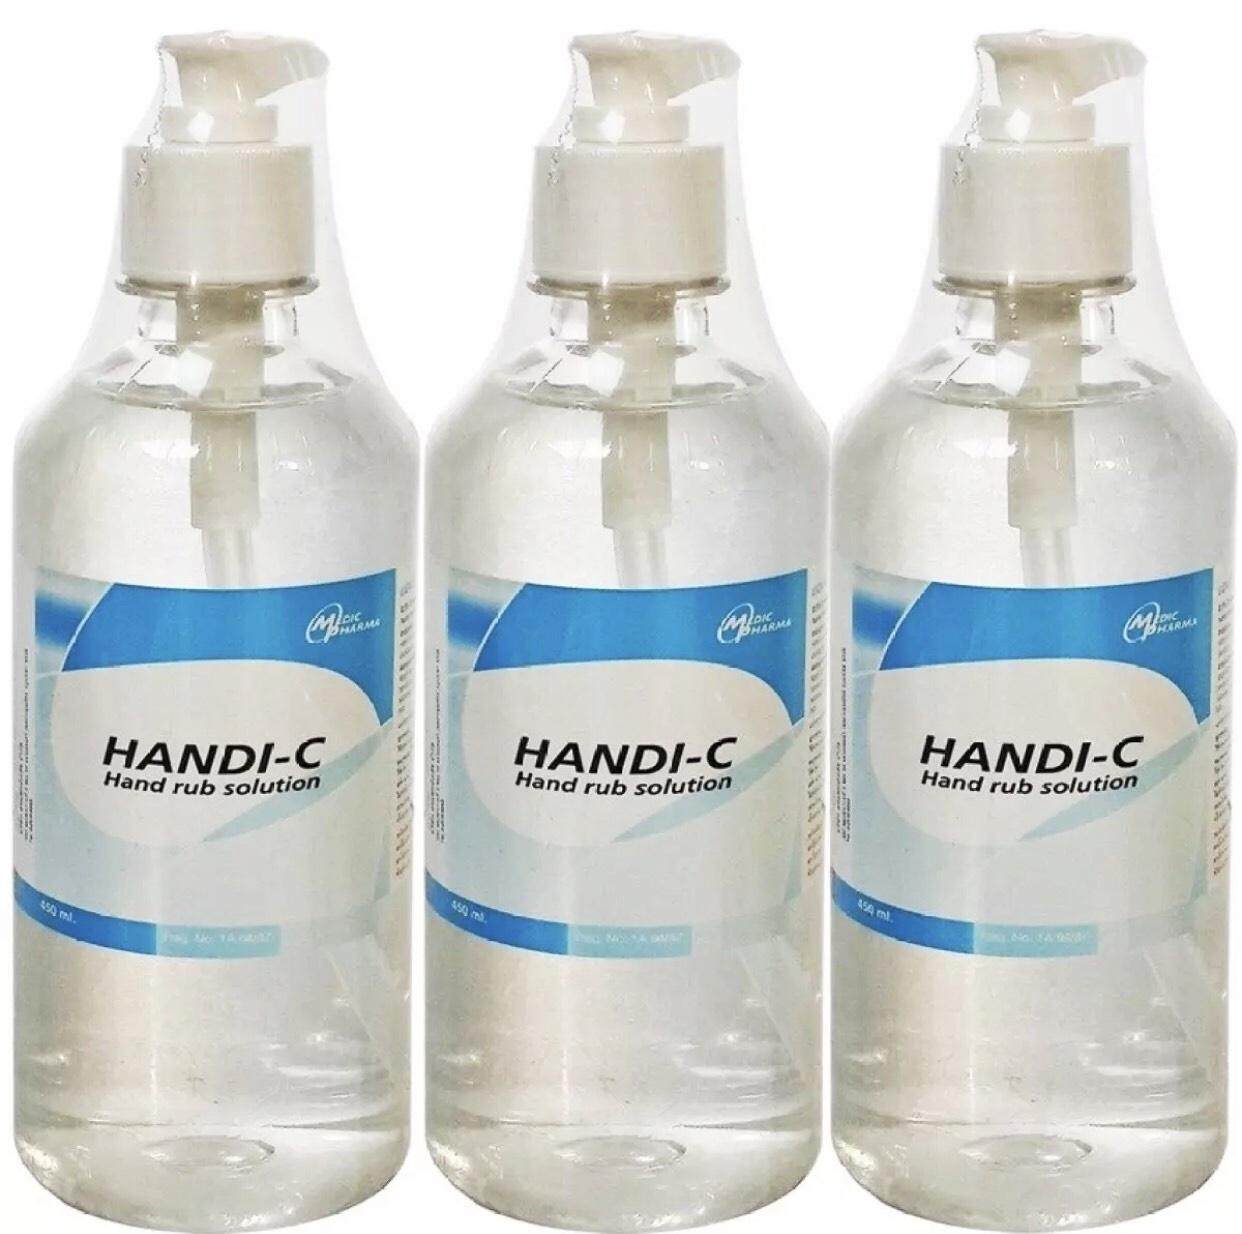 HANDI-C แอลกอฮอล์สำหรับล้างมือ 450 ml. 3 ขวด